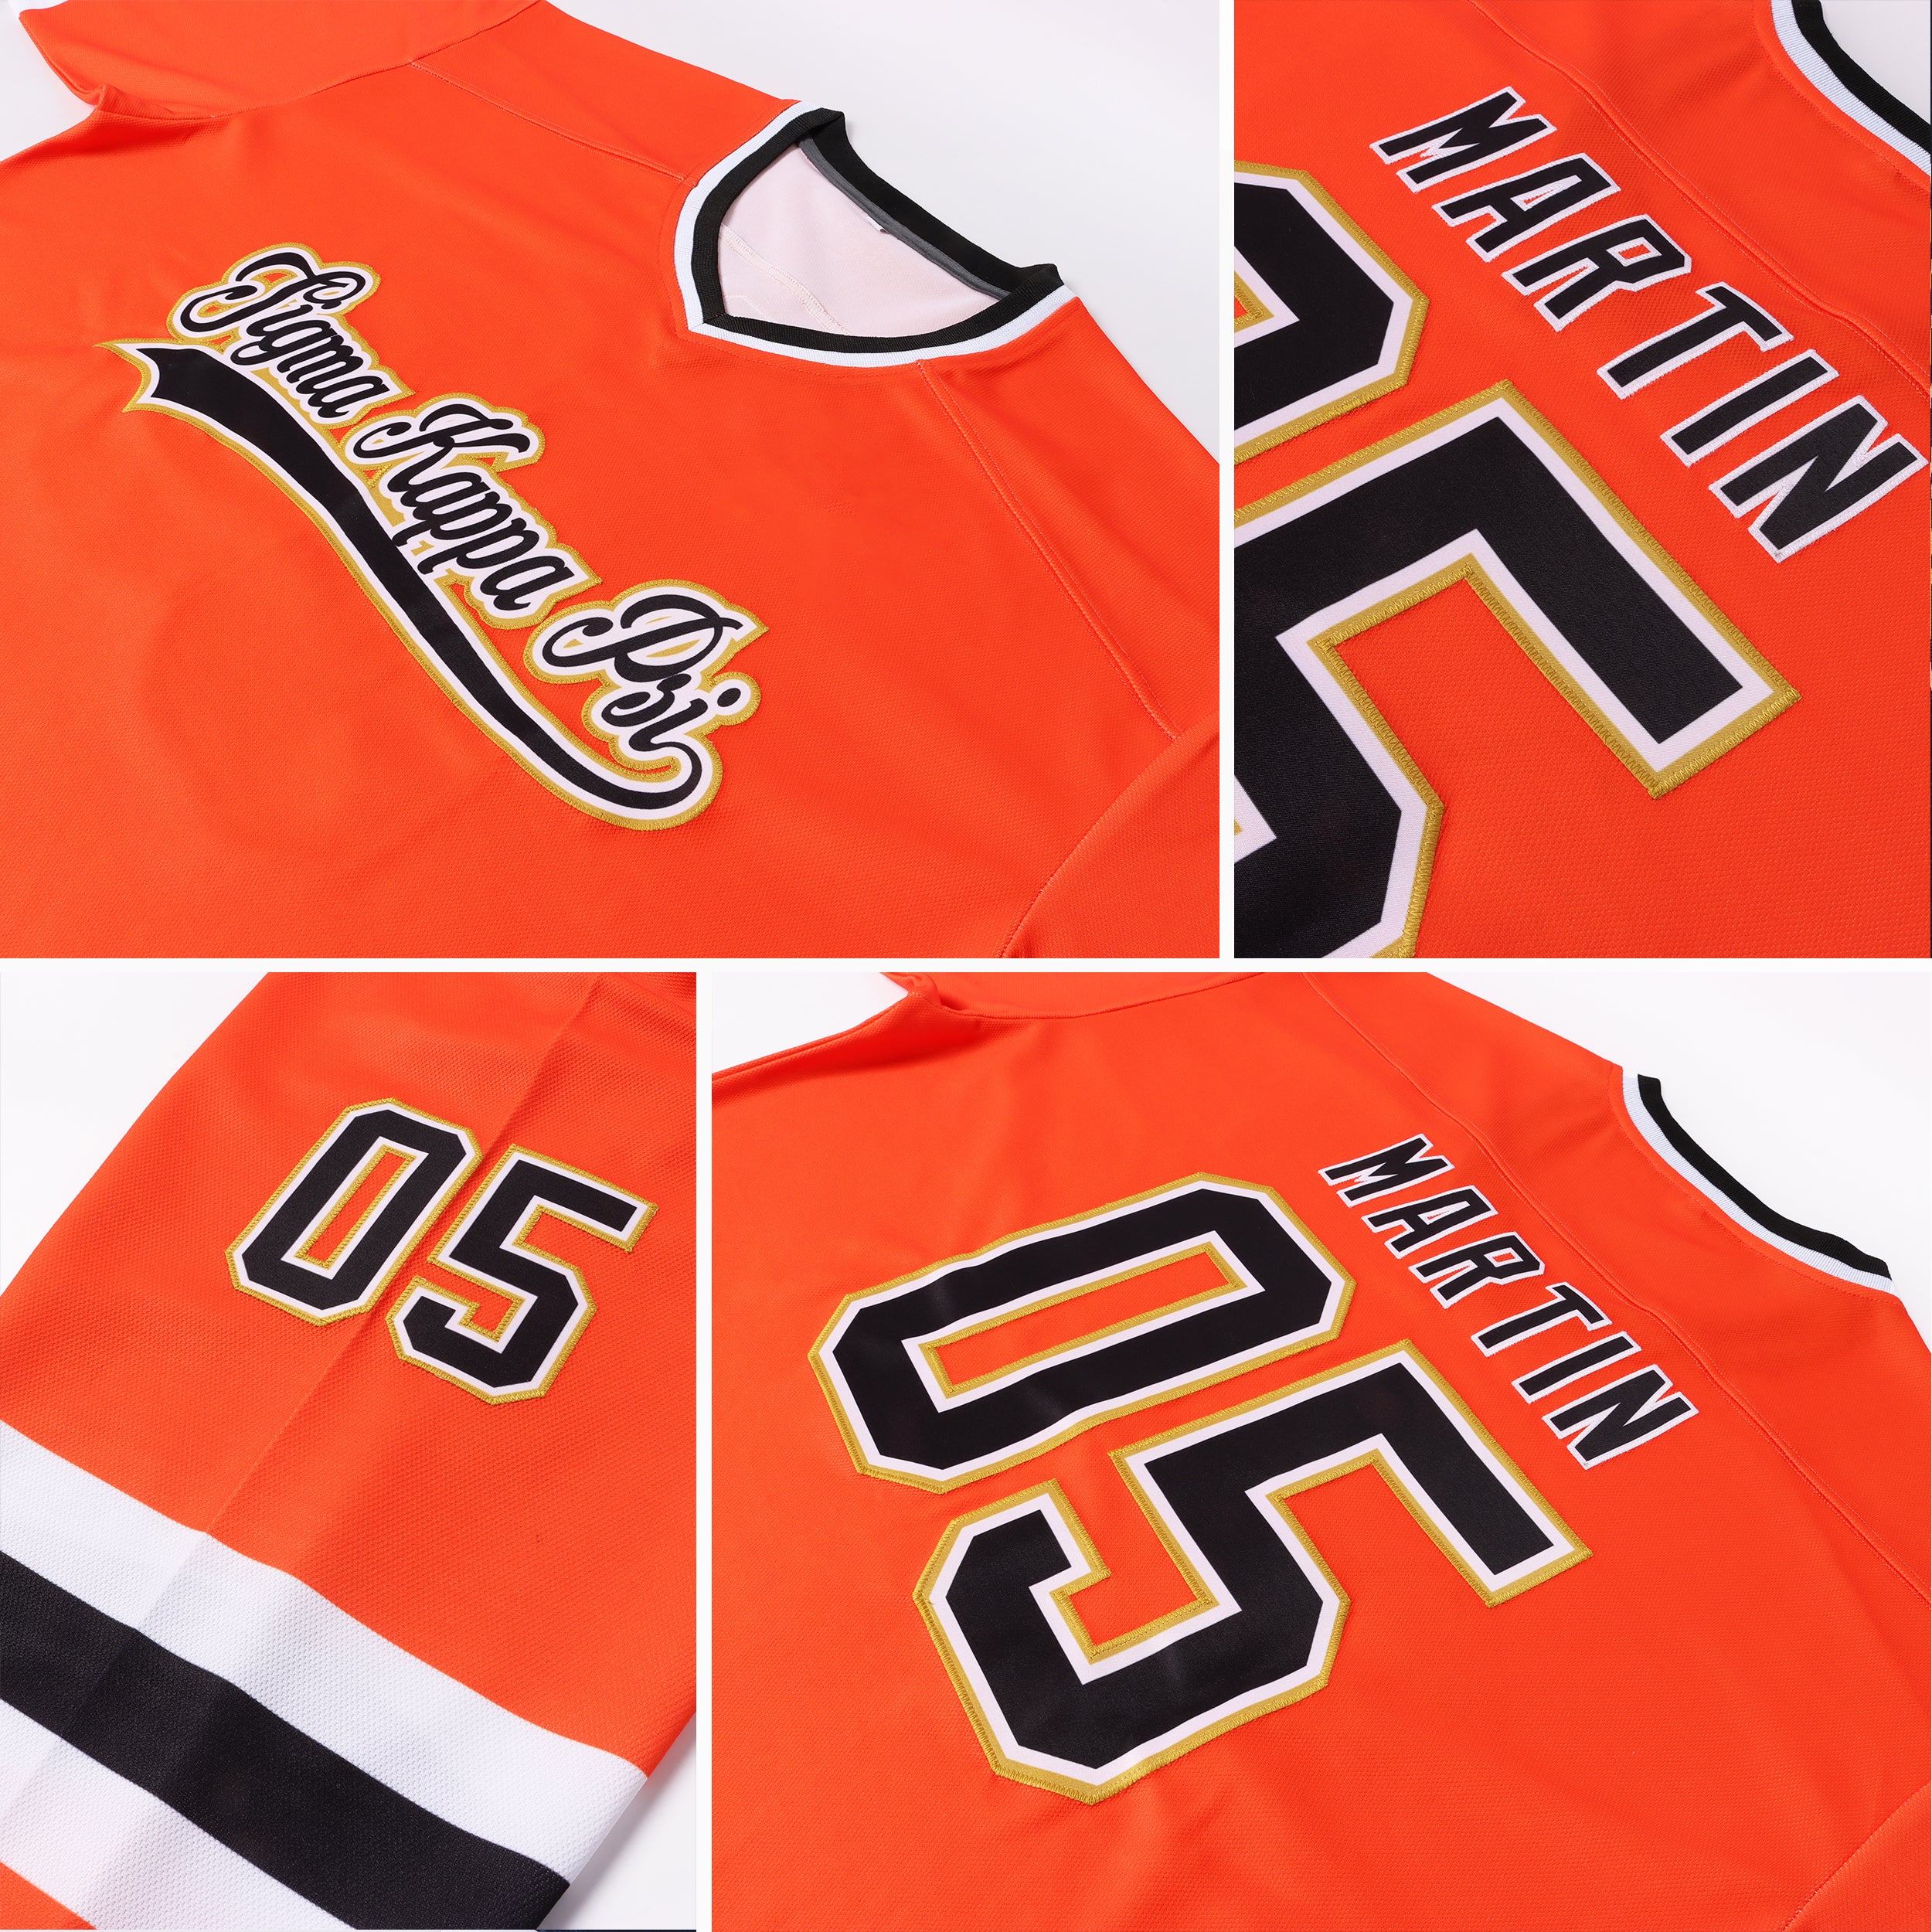 MOQ 5pcs Promotional Custom Ice Hockey Jerseys Orange Black with